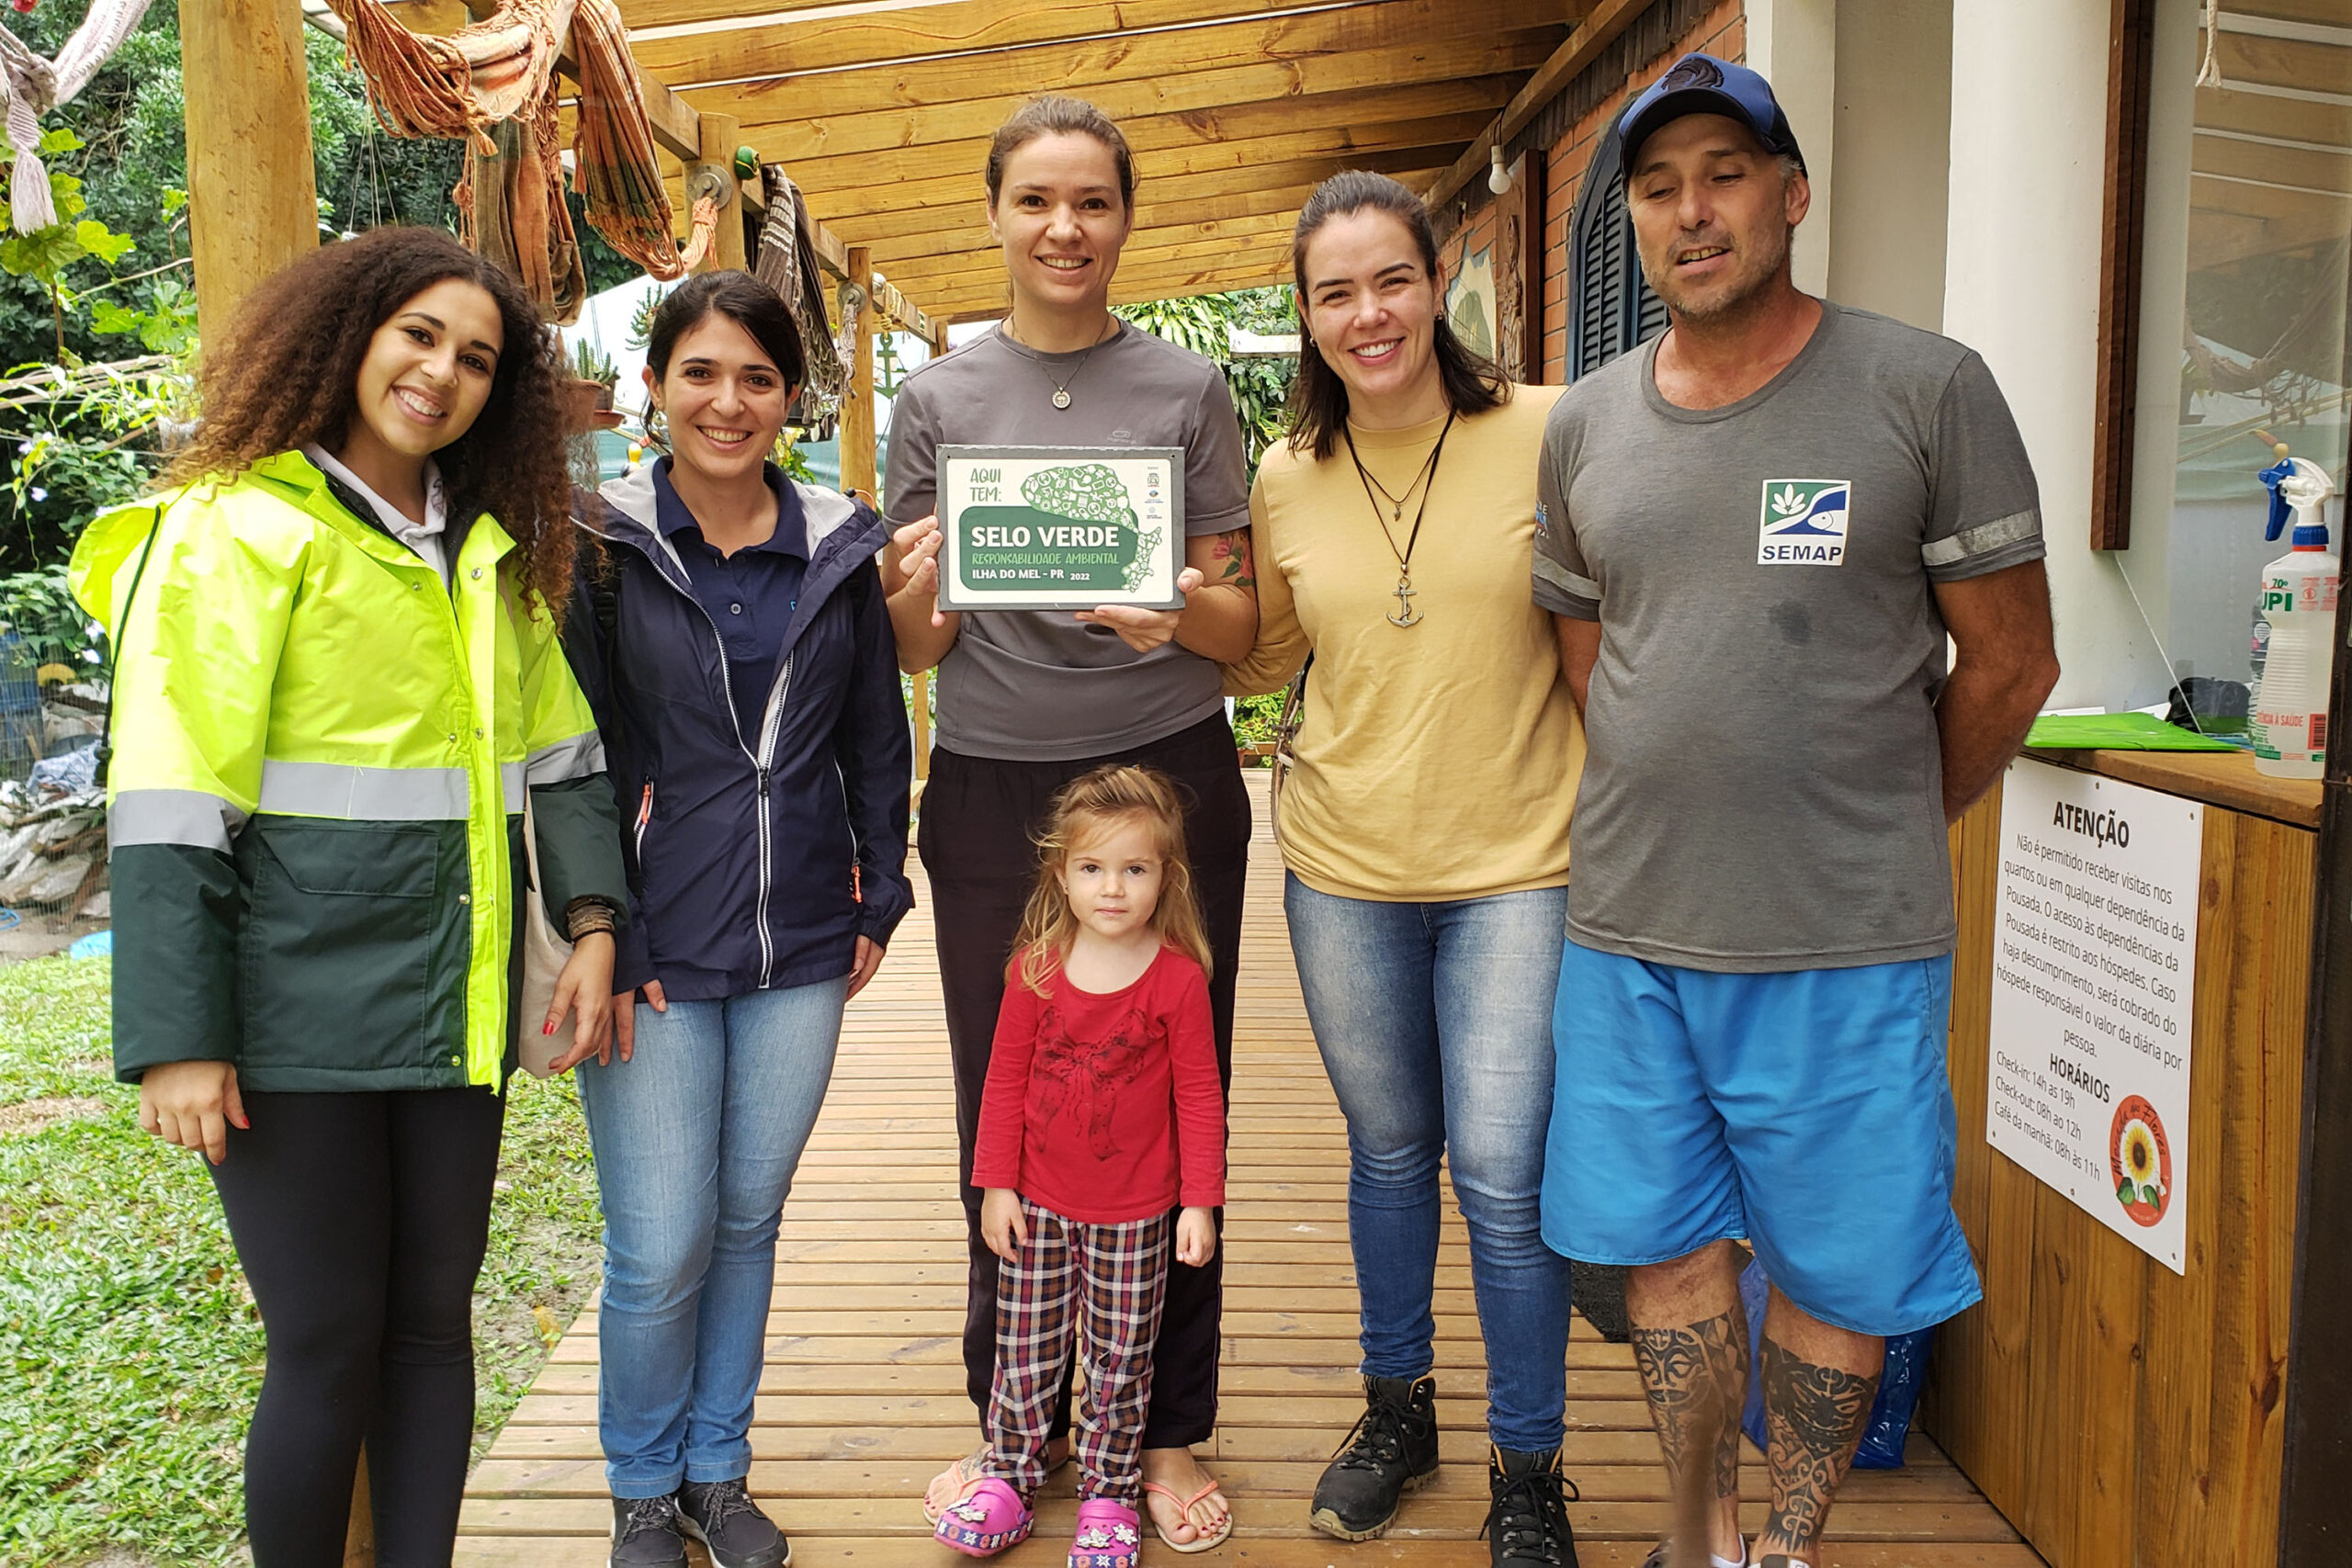 Mesmo antes do selo verde, as pousadas e moradores da região do Paraná já se empenhavam em cuidar do meio ambiente e reciclagem